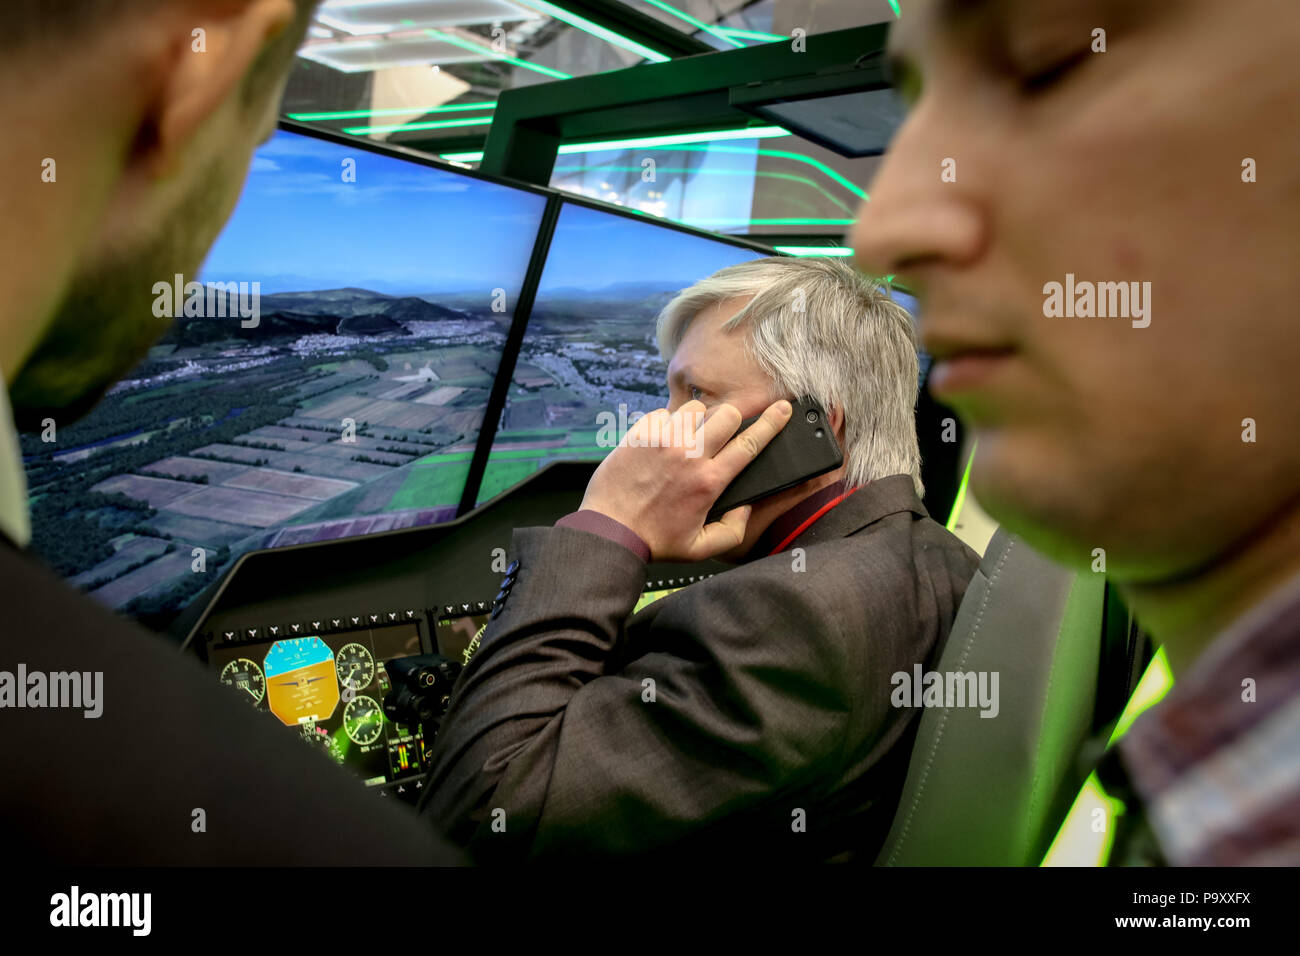 Siège visiteur à l'intérieur de l'hélicoptère simulateur à l'ITC/USA 2015 Exposition au Crocus Expo, Moscou, Russie. Banque D'Images